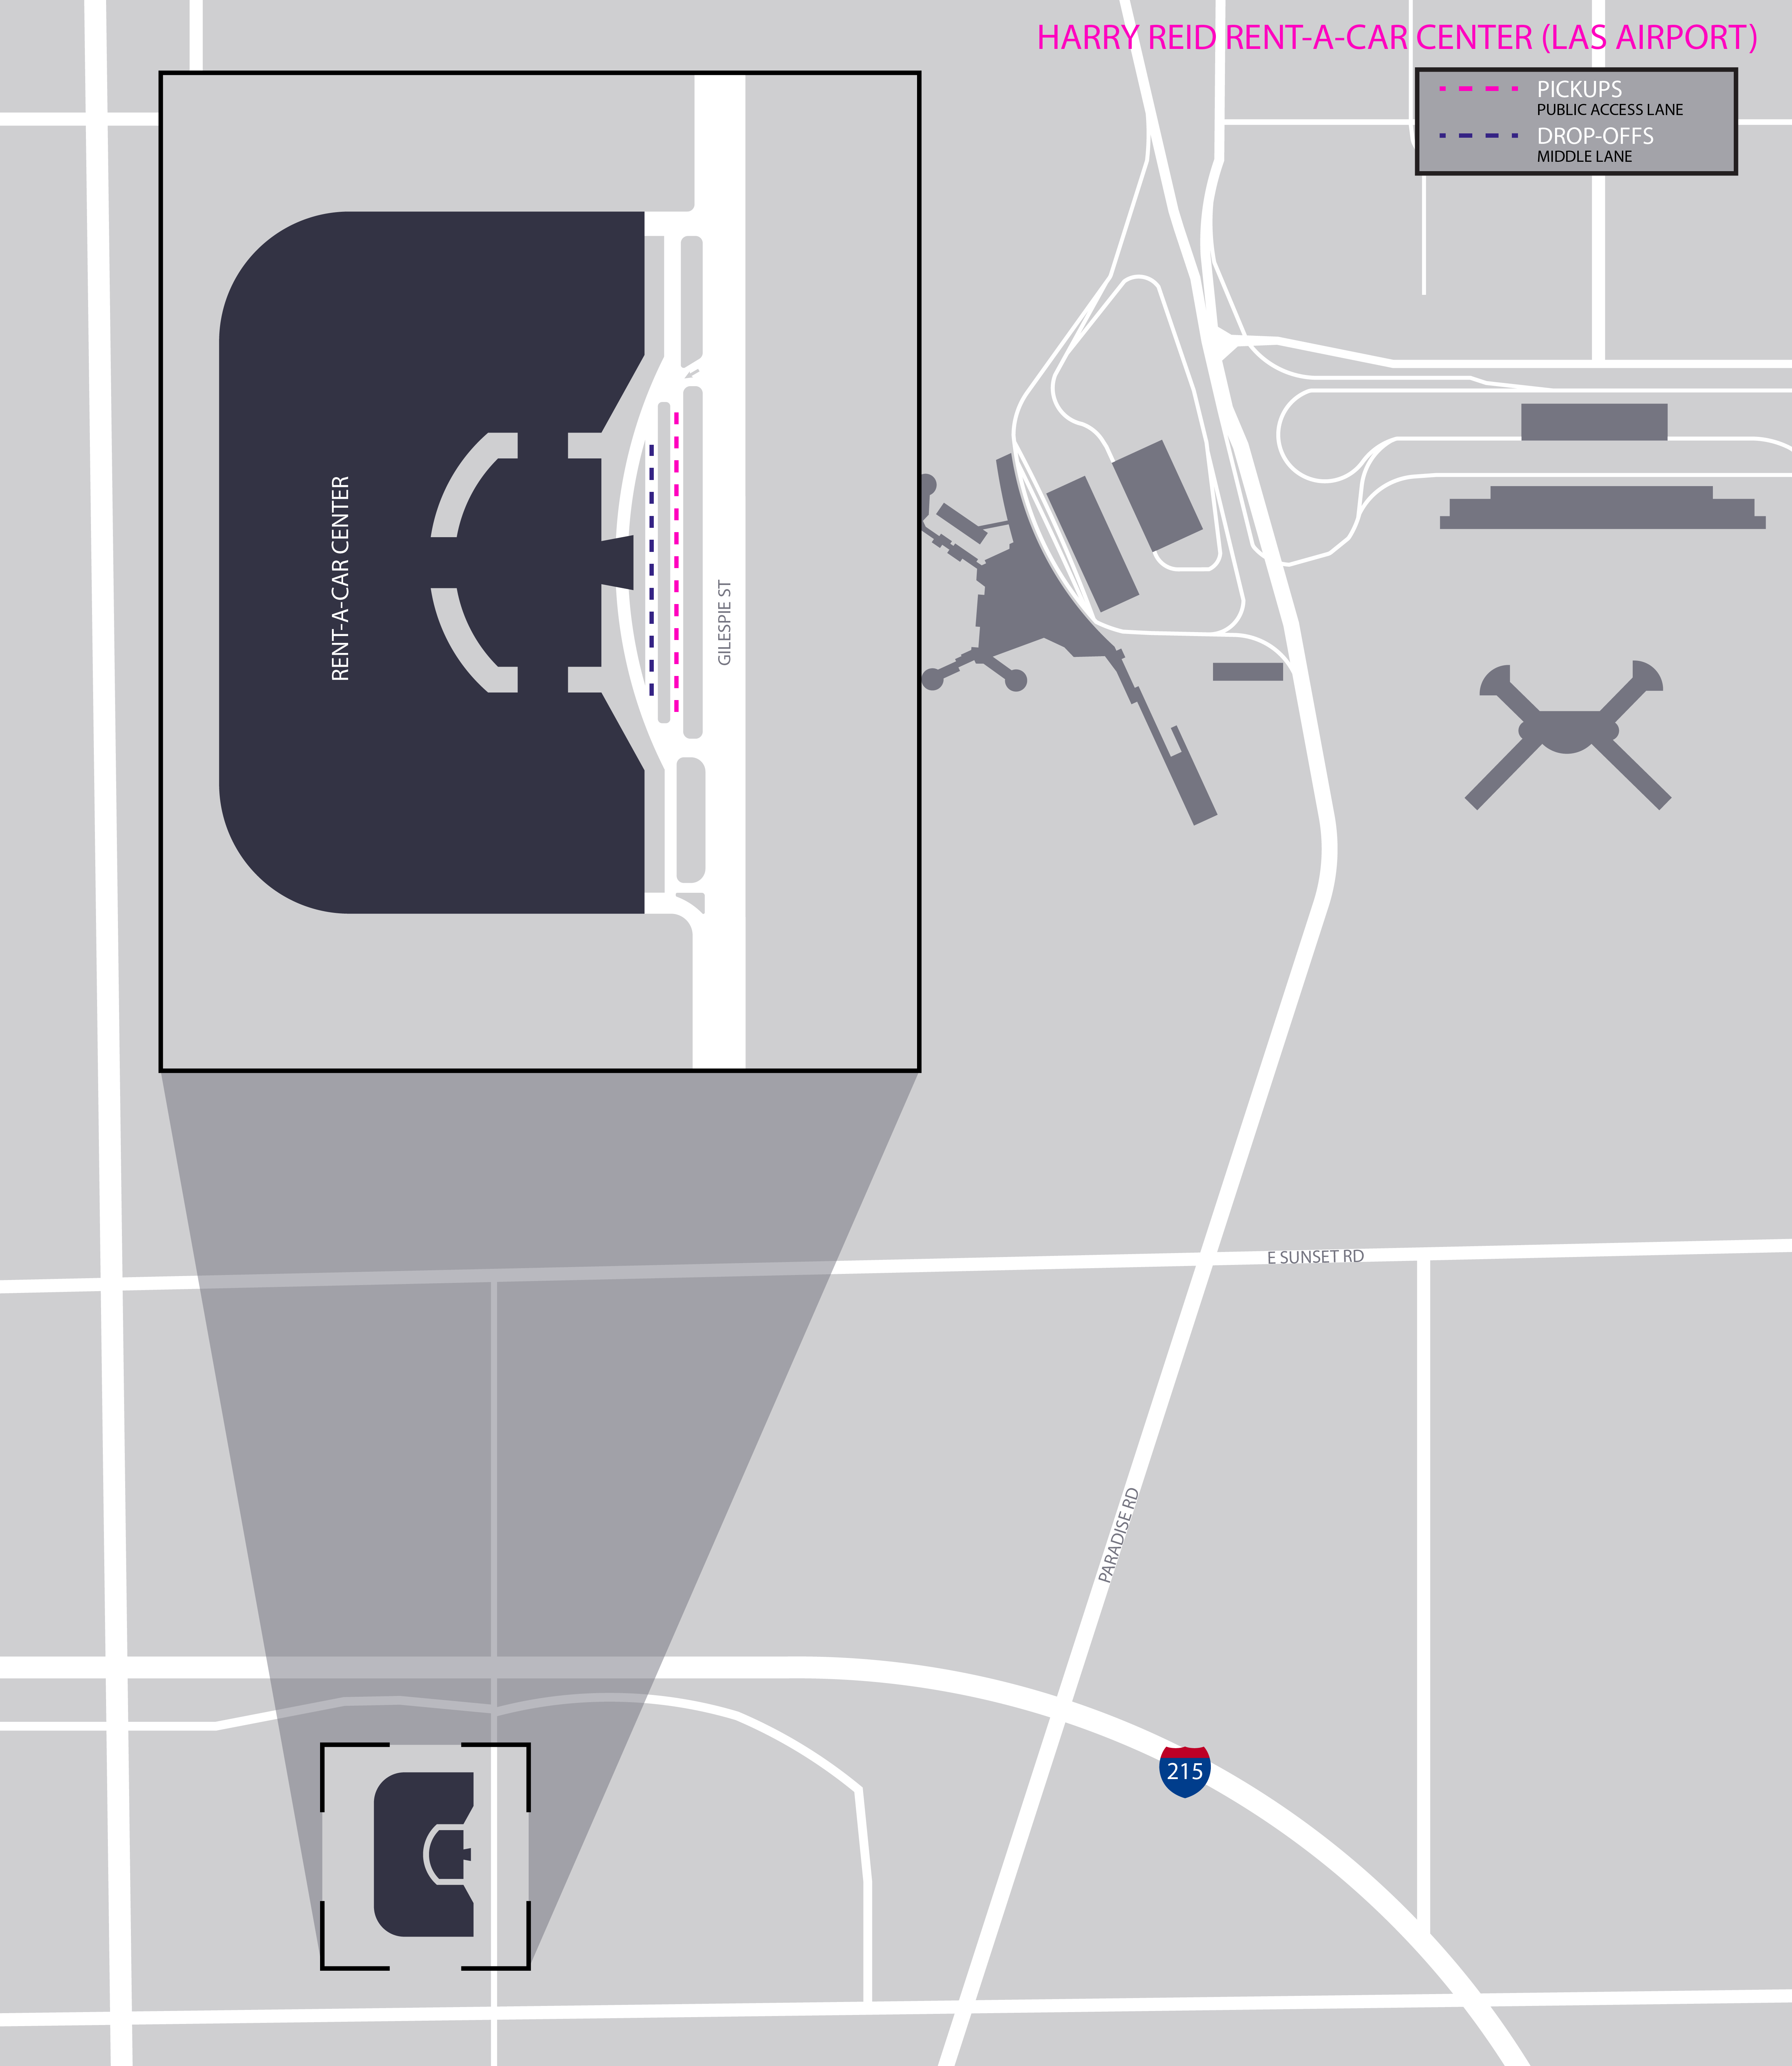 Guia de estacionamento do aeroporto de Las Vegas (Harry Reid